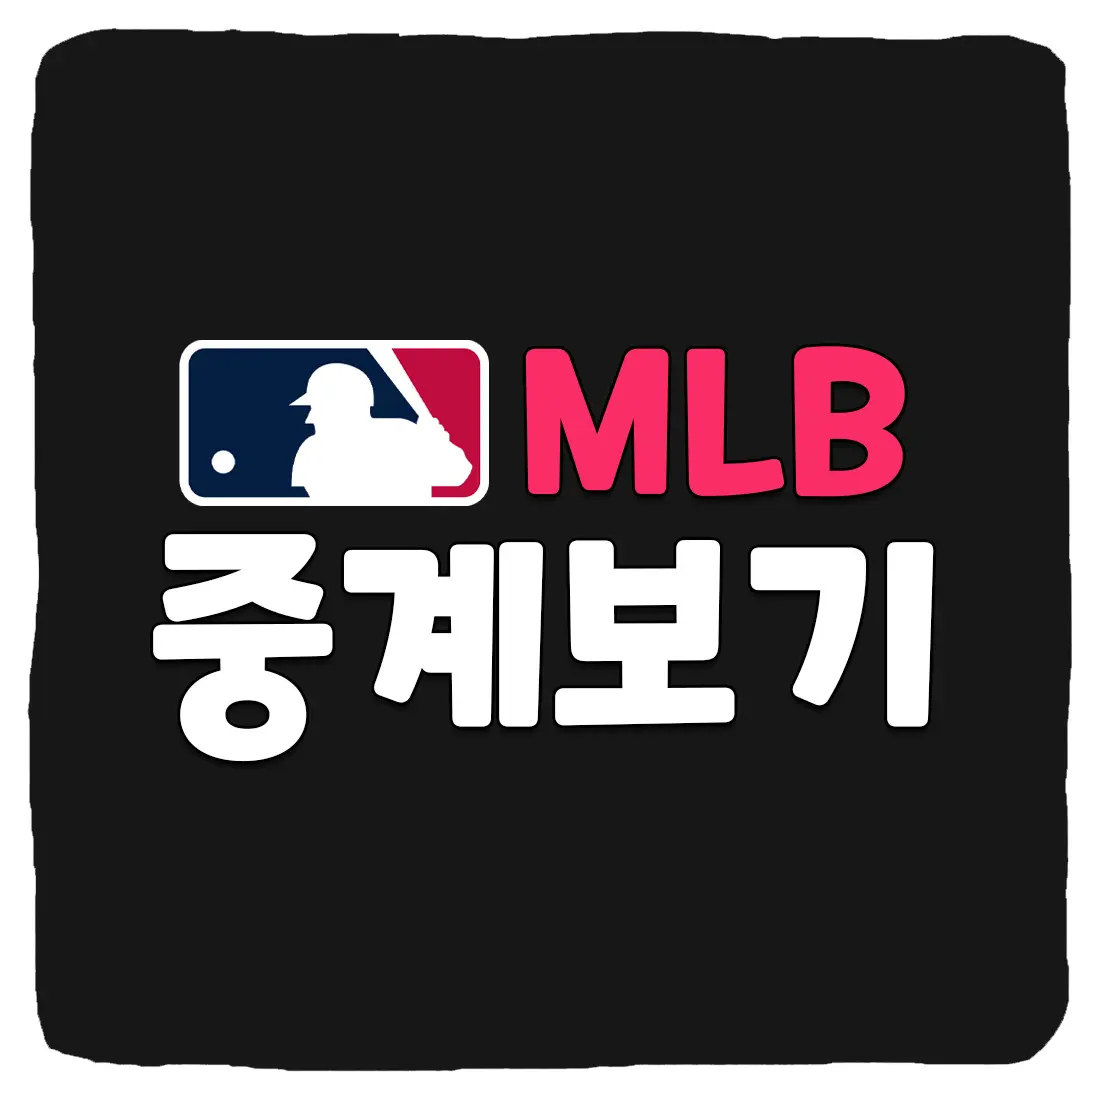 MLB 중계 및 메이저리그 실시간 중계 사이트 좌표